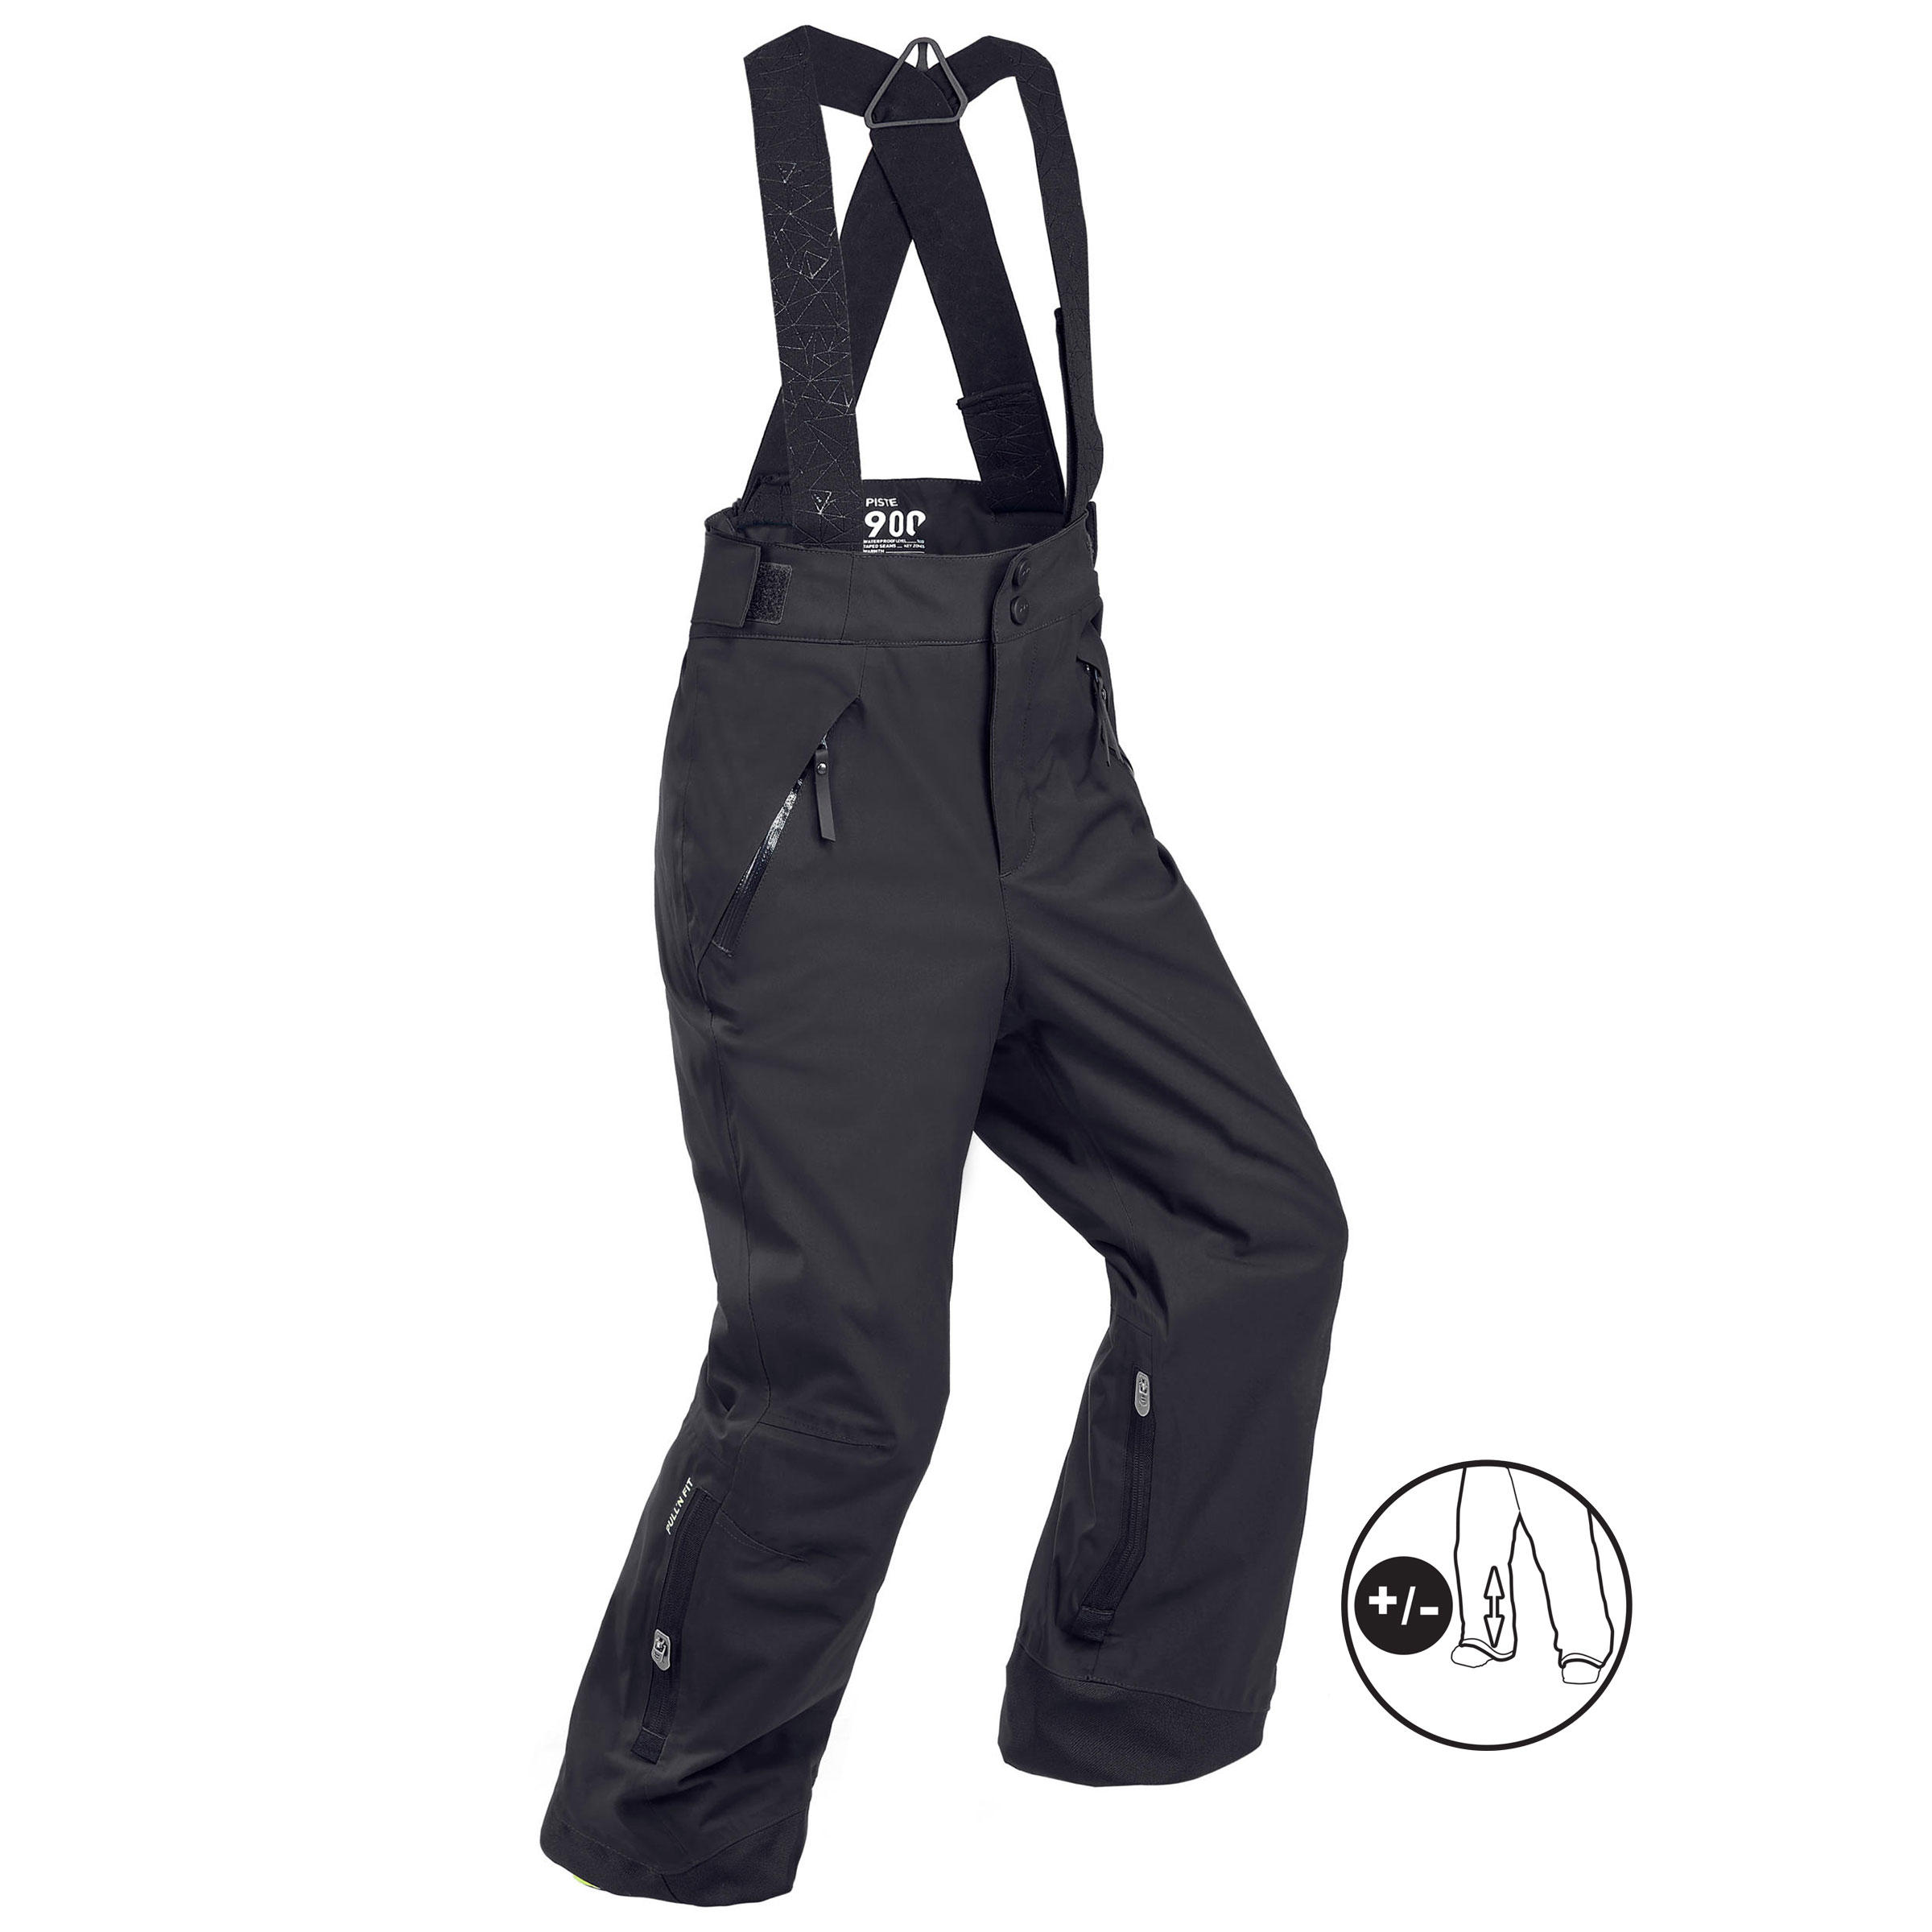 Pantalon impermeabil călduros schi PNF900 Negru Băieți Băieți